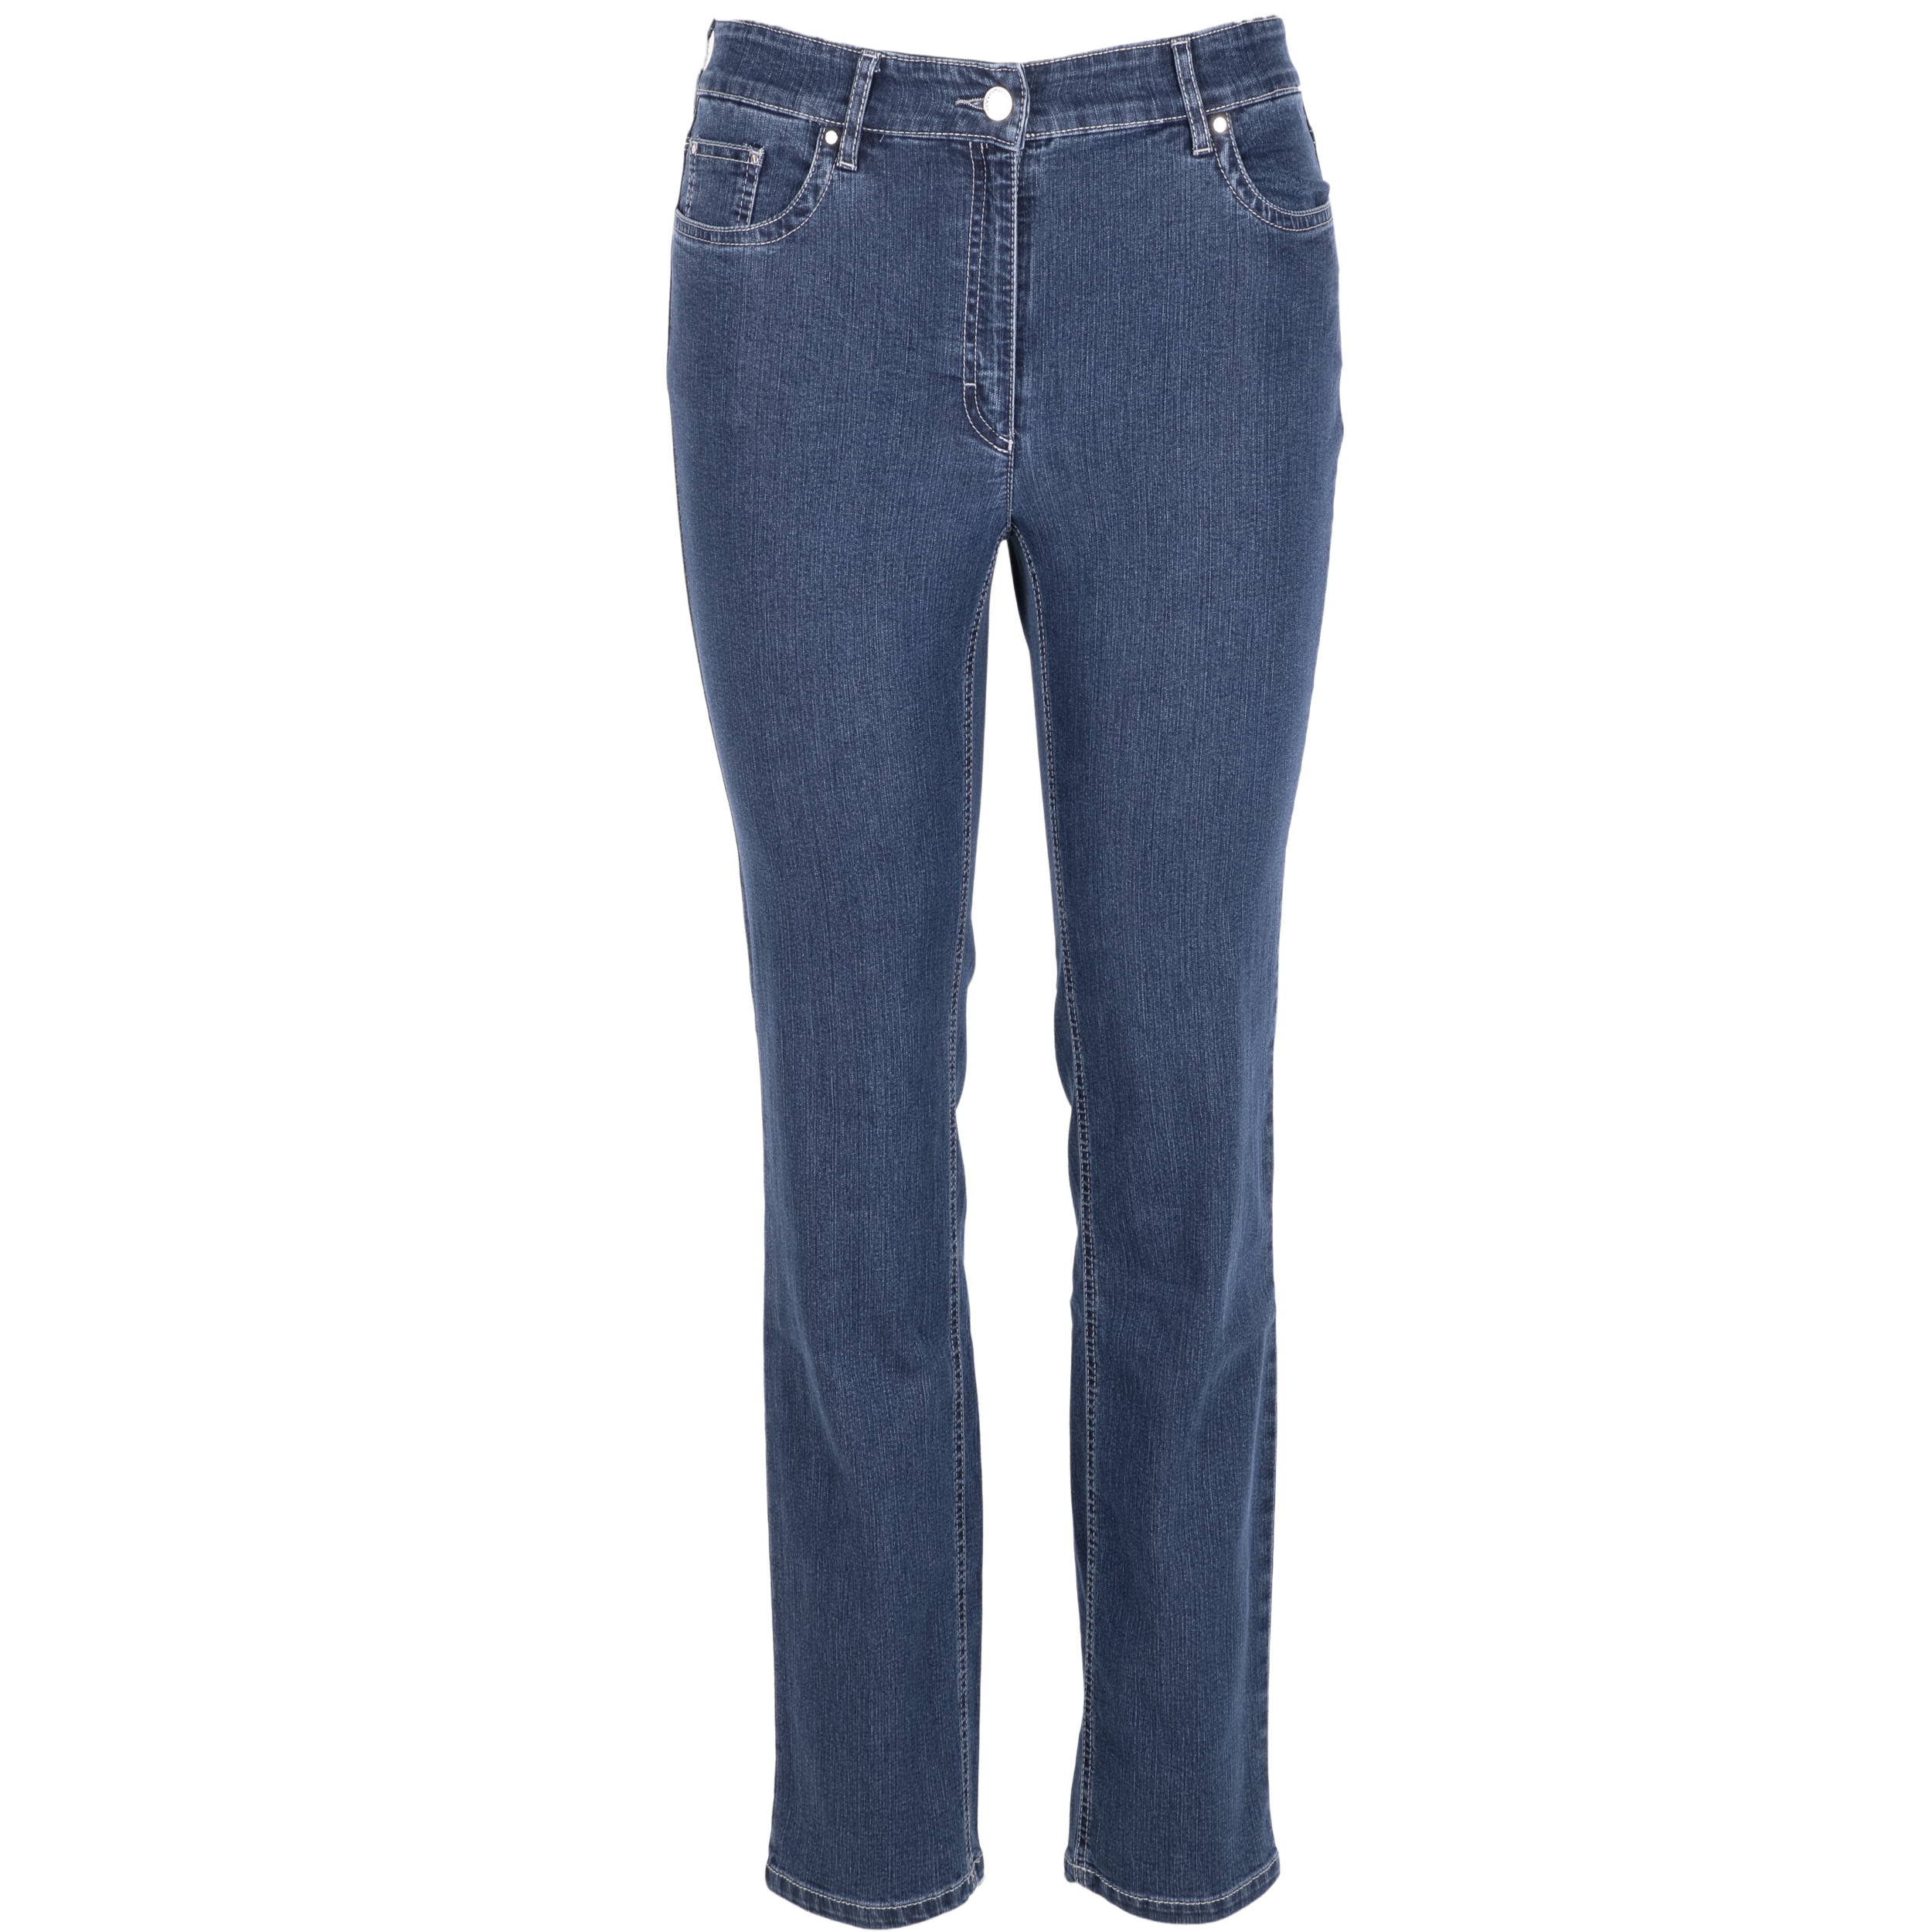 Zerres Damen Jeans Cora comfort S 23 blau